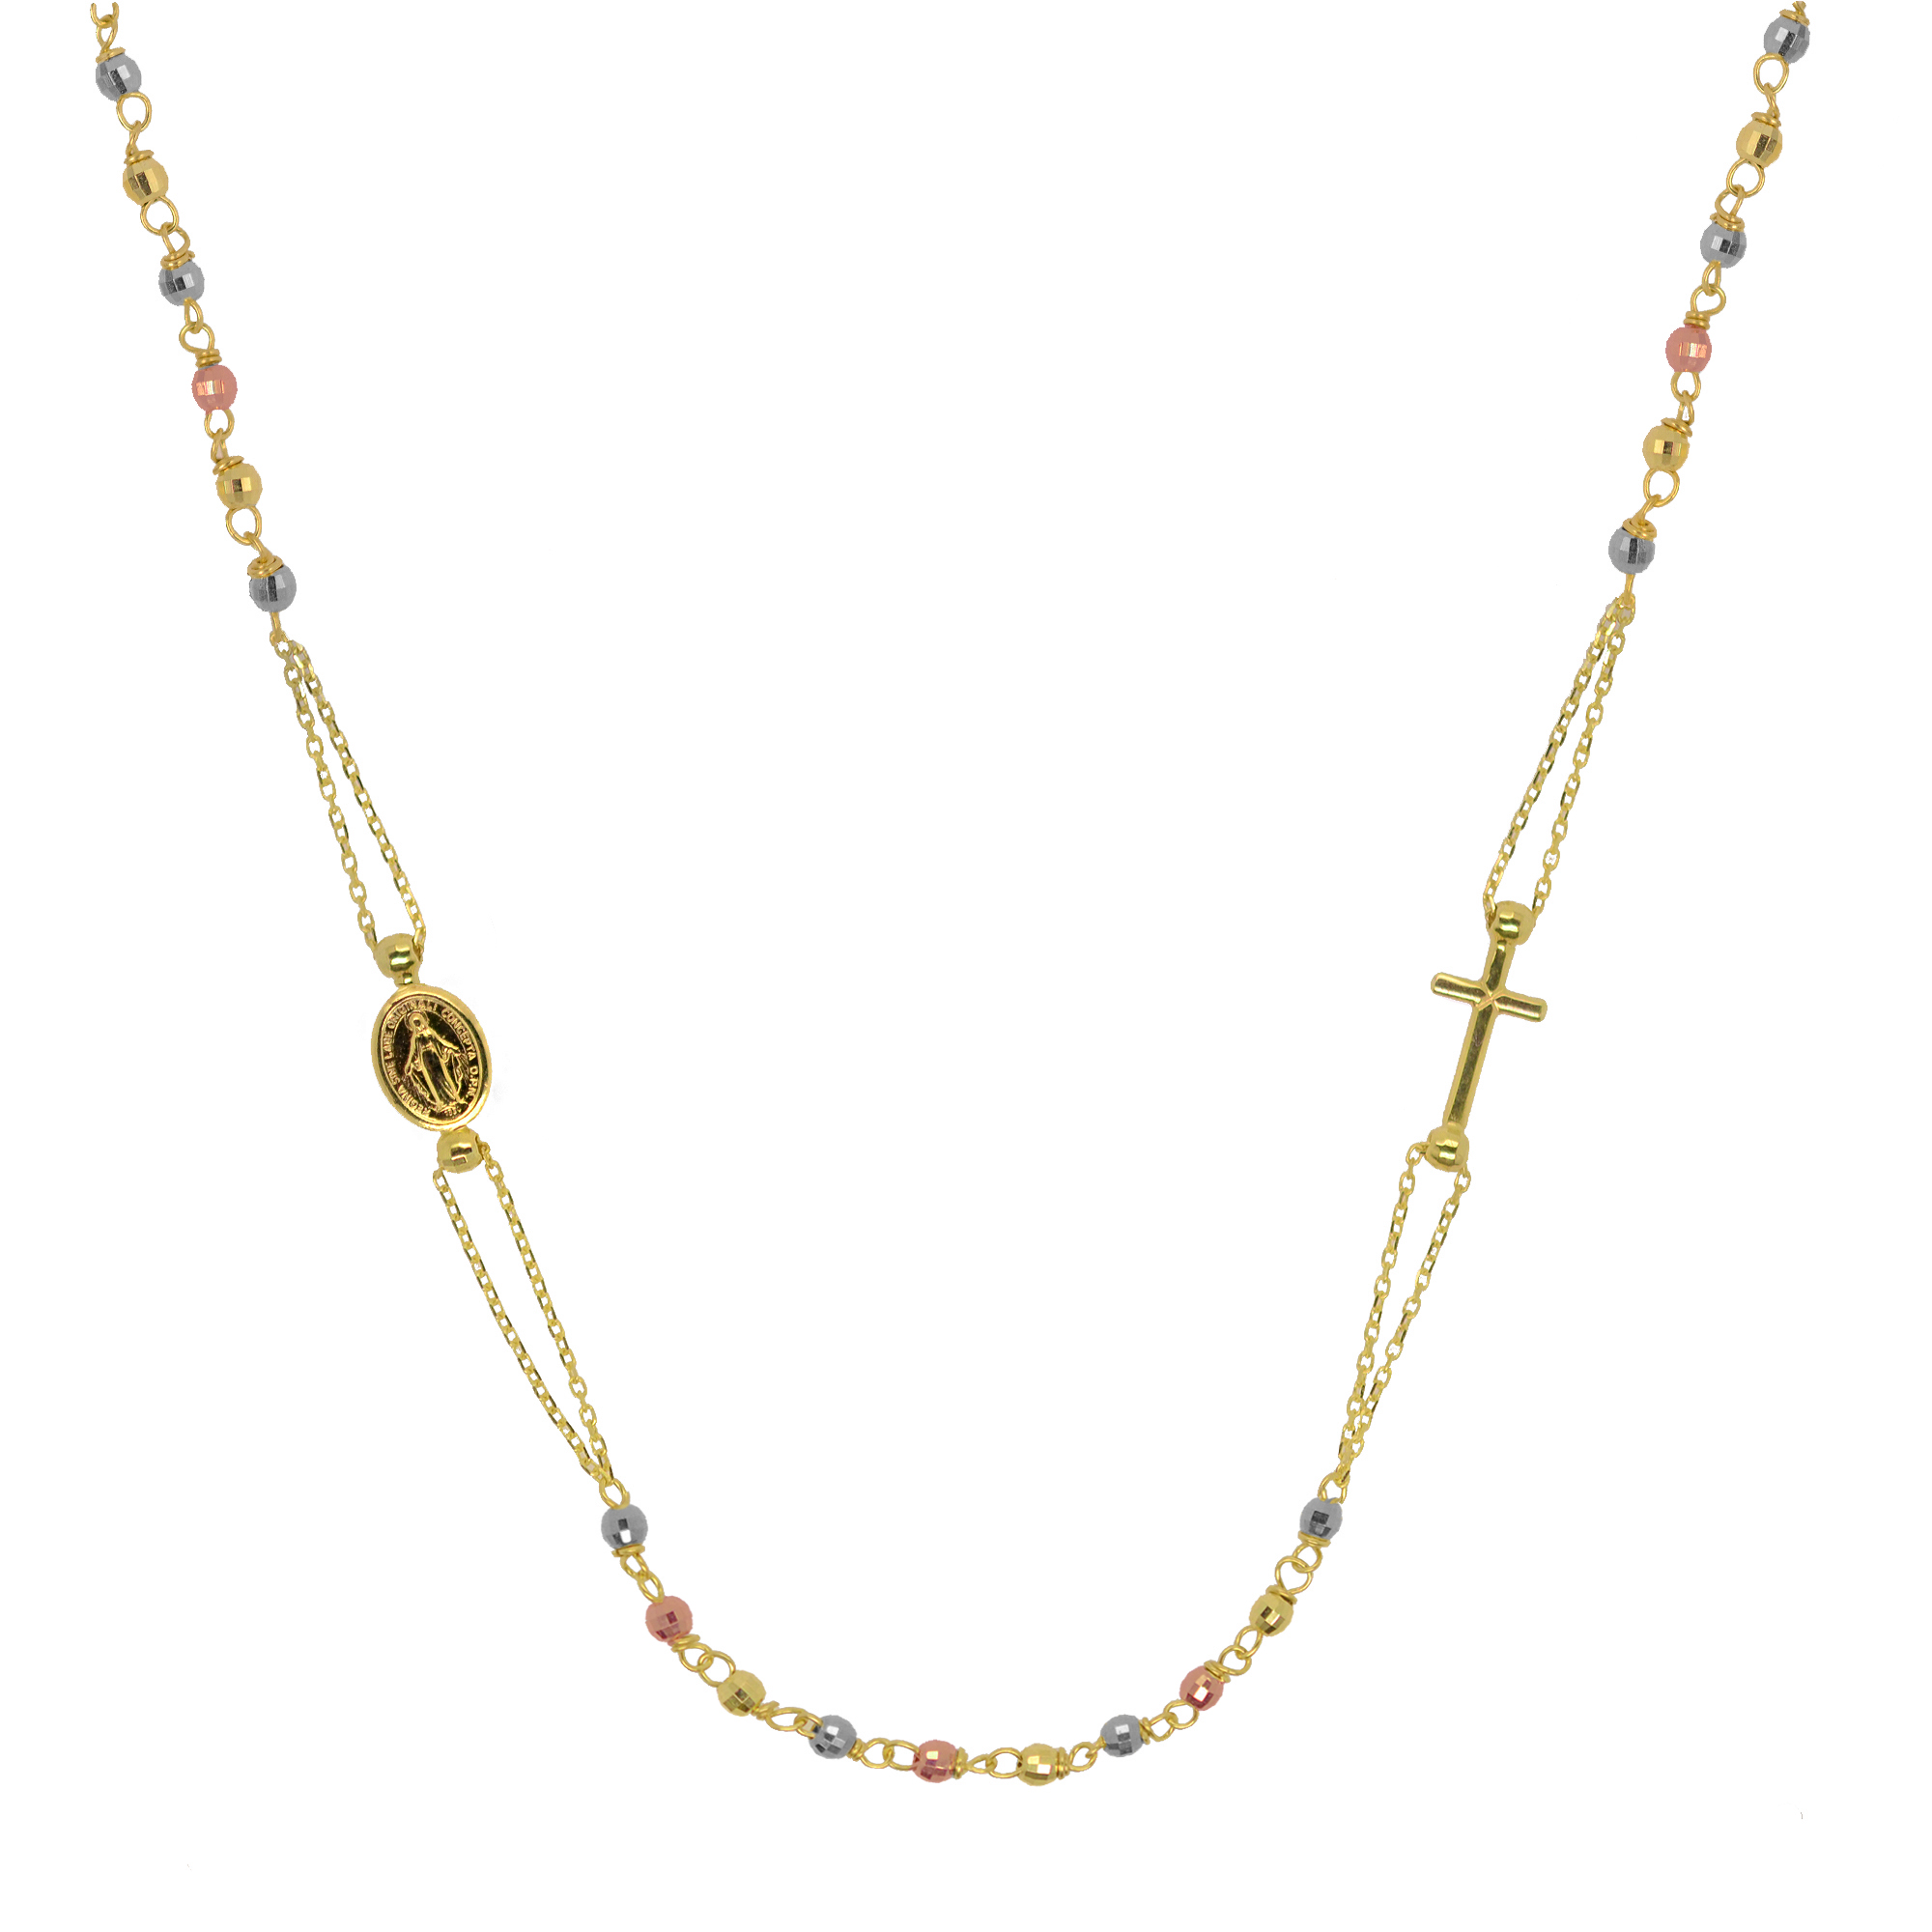 Evolution Group Zlatý 14 karátový náhrdelník růženec s křížem a medailonkem s Pannou Marií RŽ06 multi